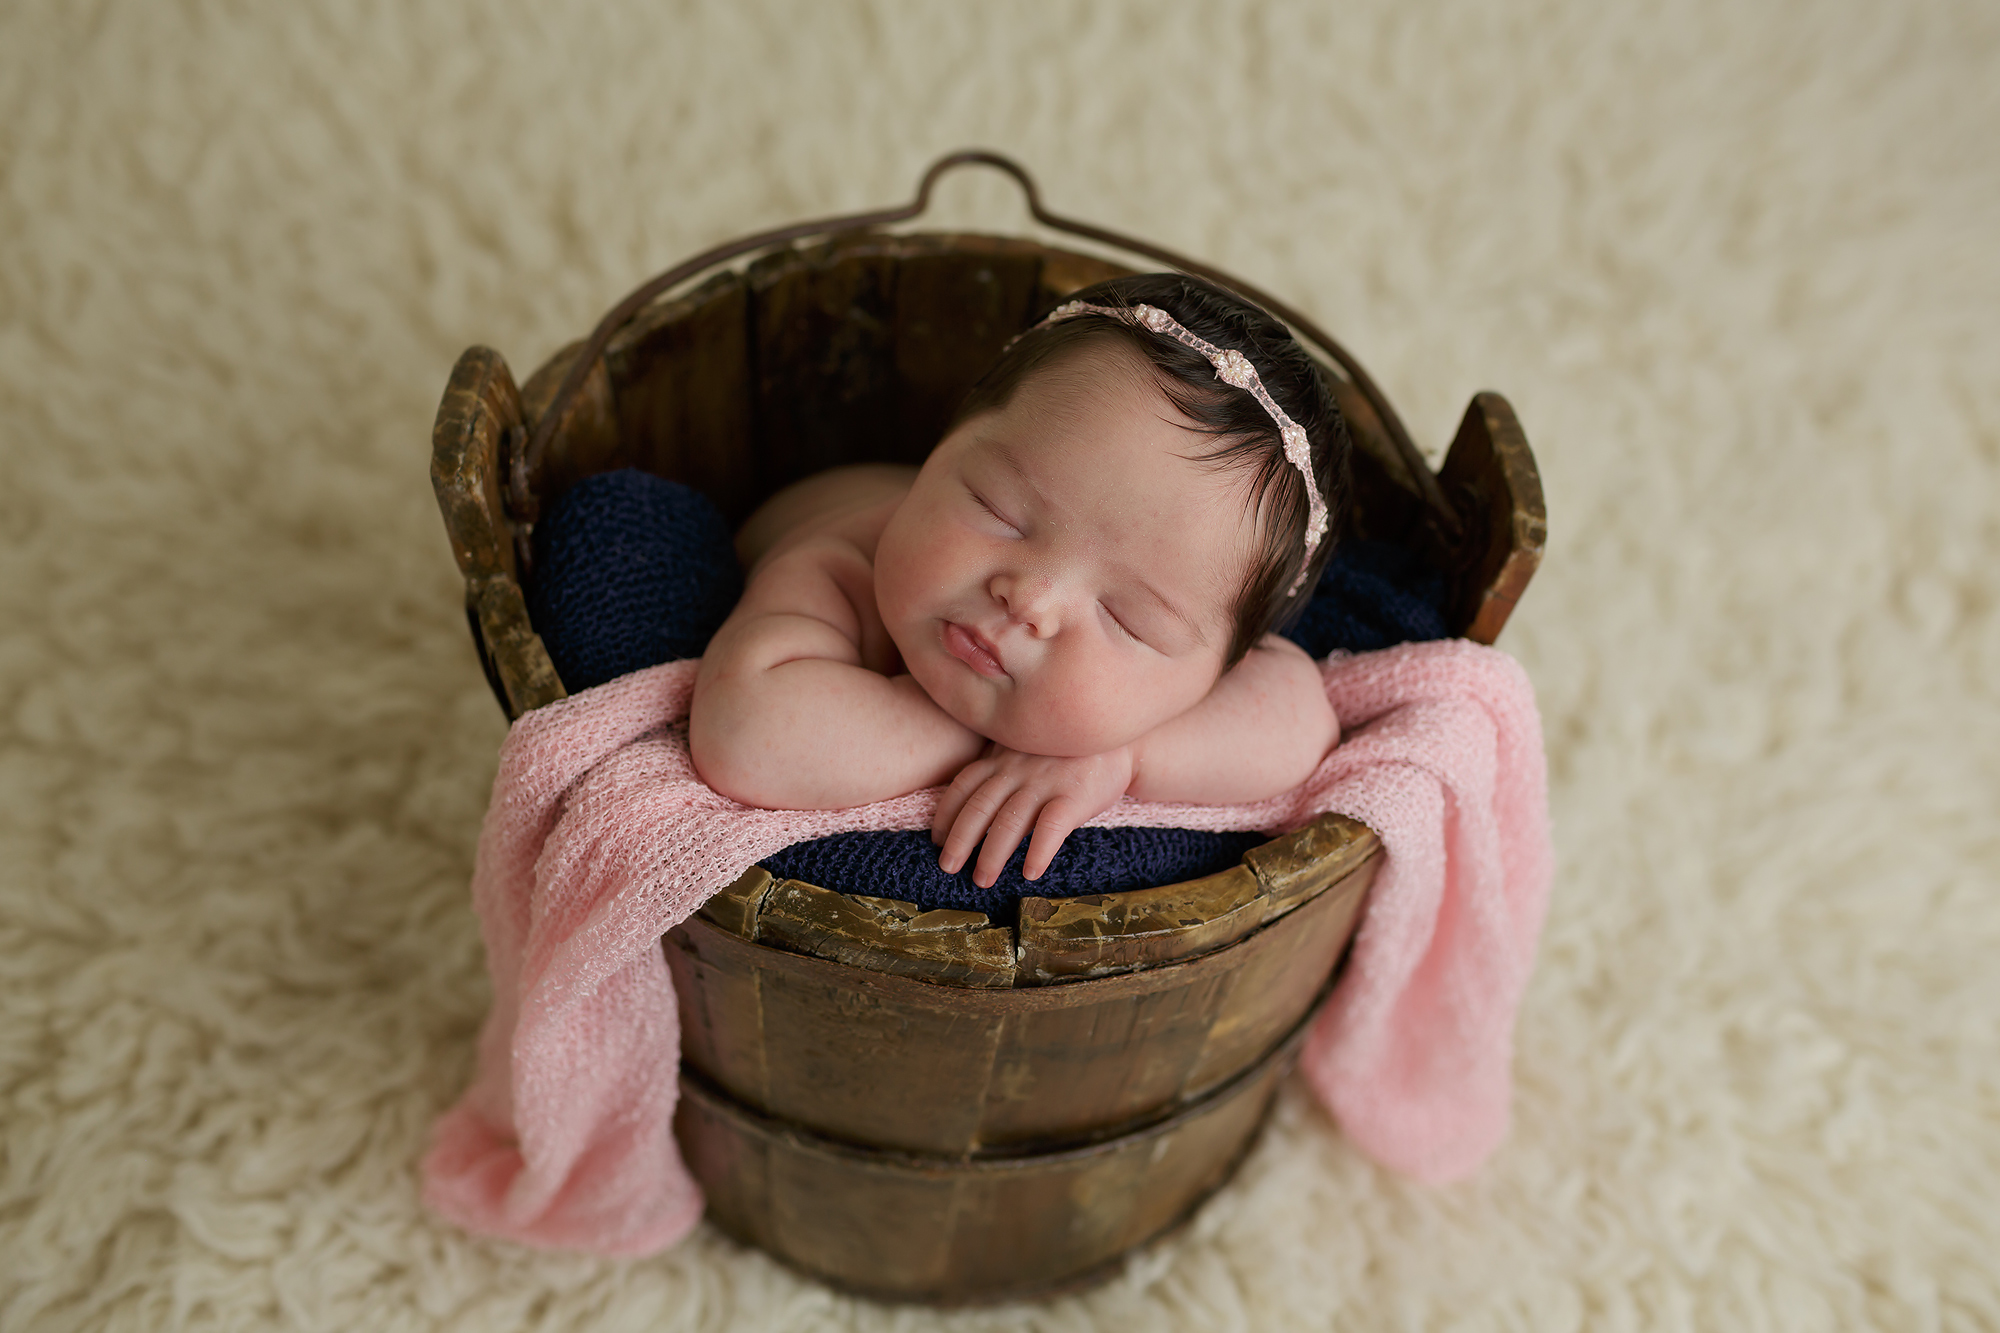 newborn baby posed in wooden bucket